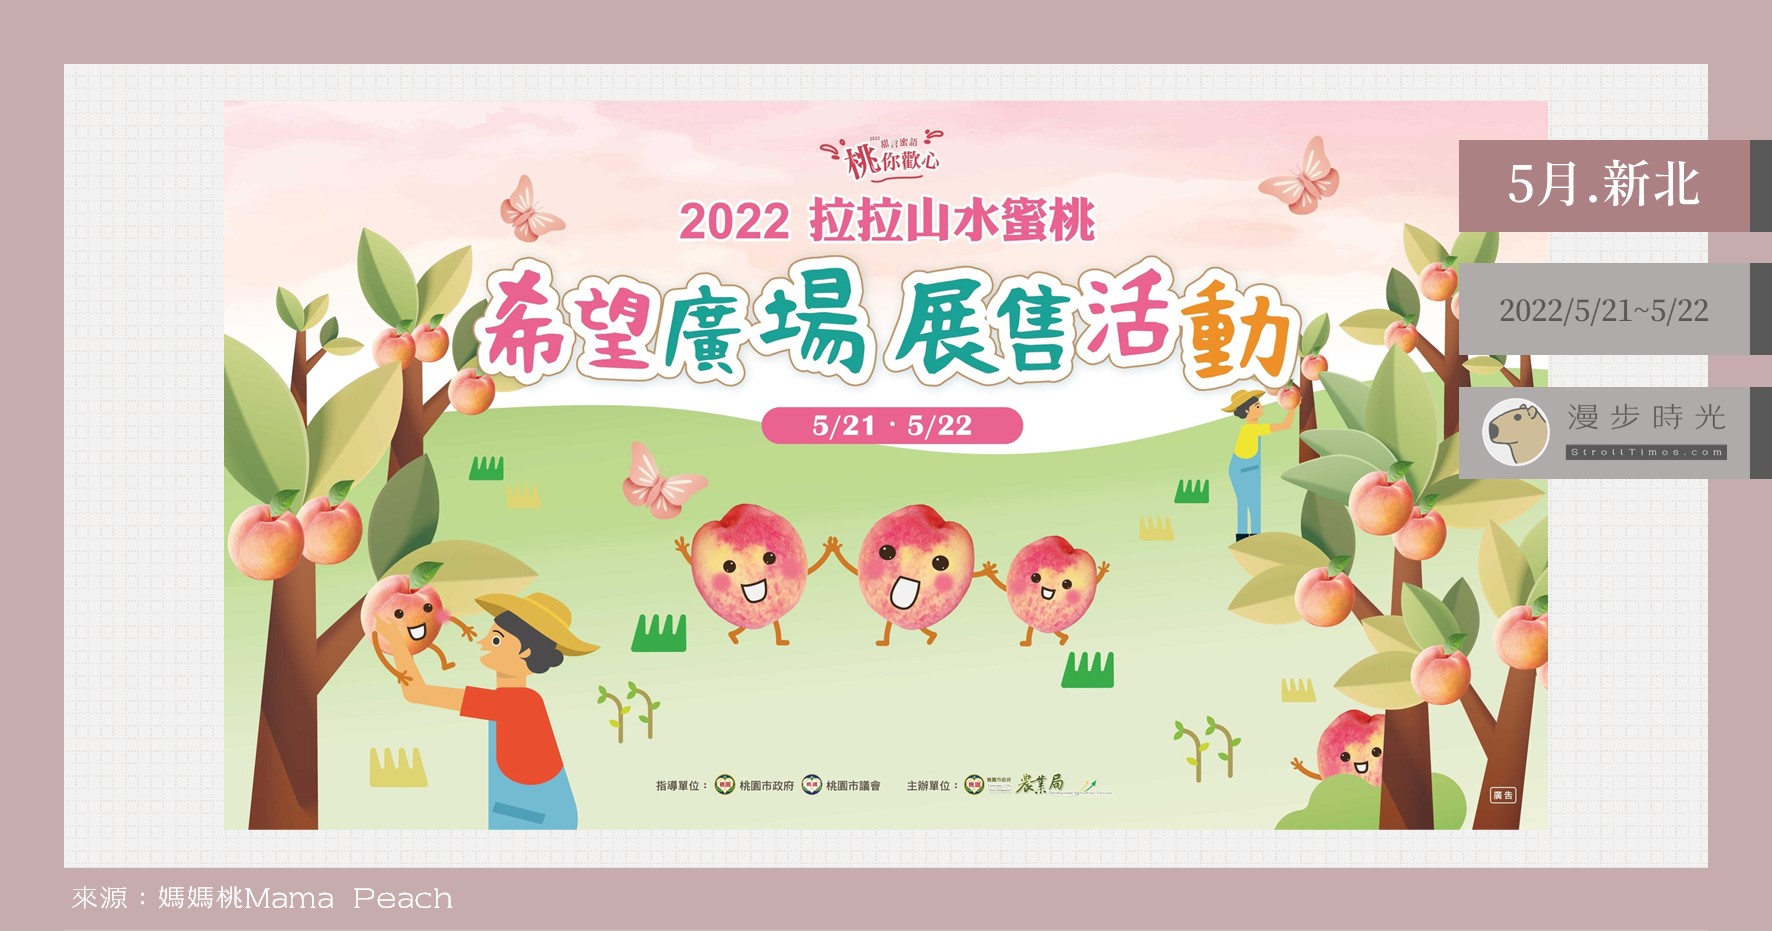 今日熱門文章：台北也能直購拉拉山水蜜桃！「2022拉拉山水蜜桃希望廣場展售活動」兩天快閃，也能預定快取